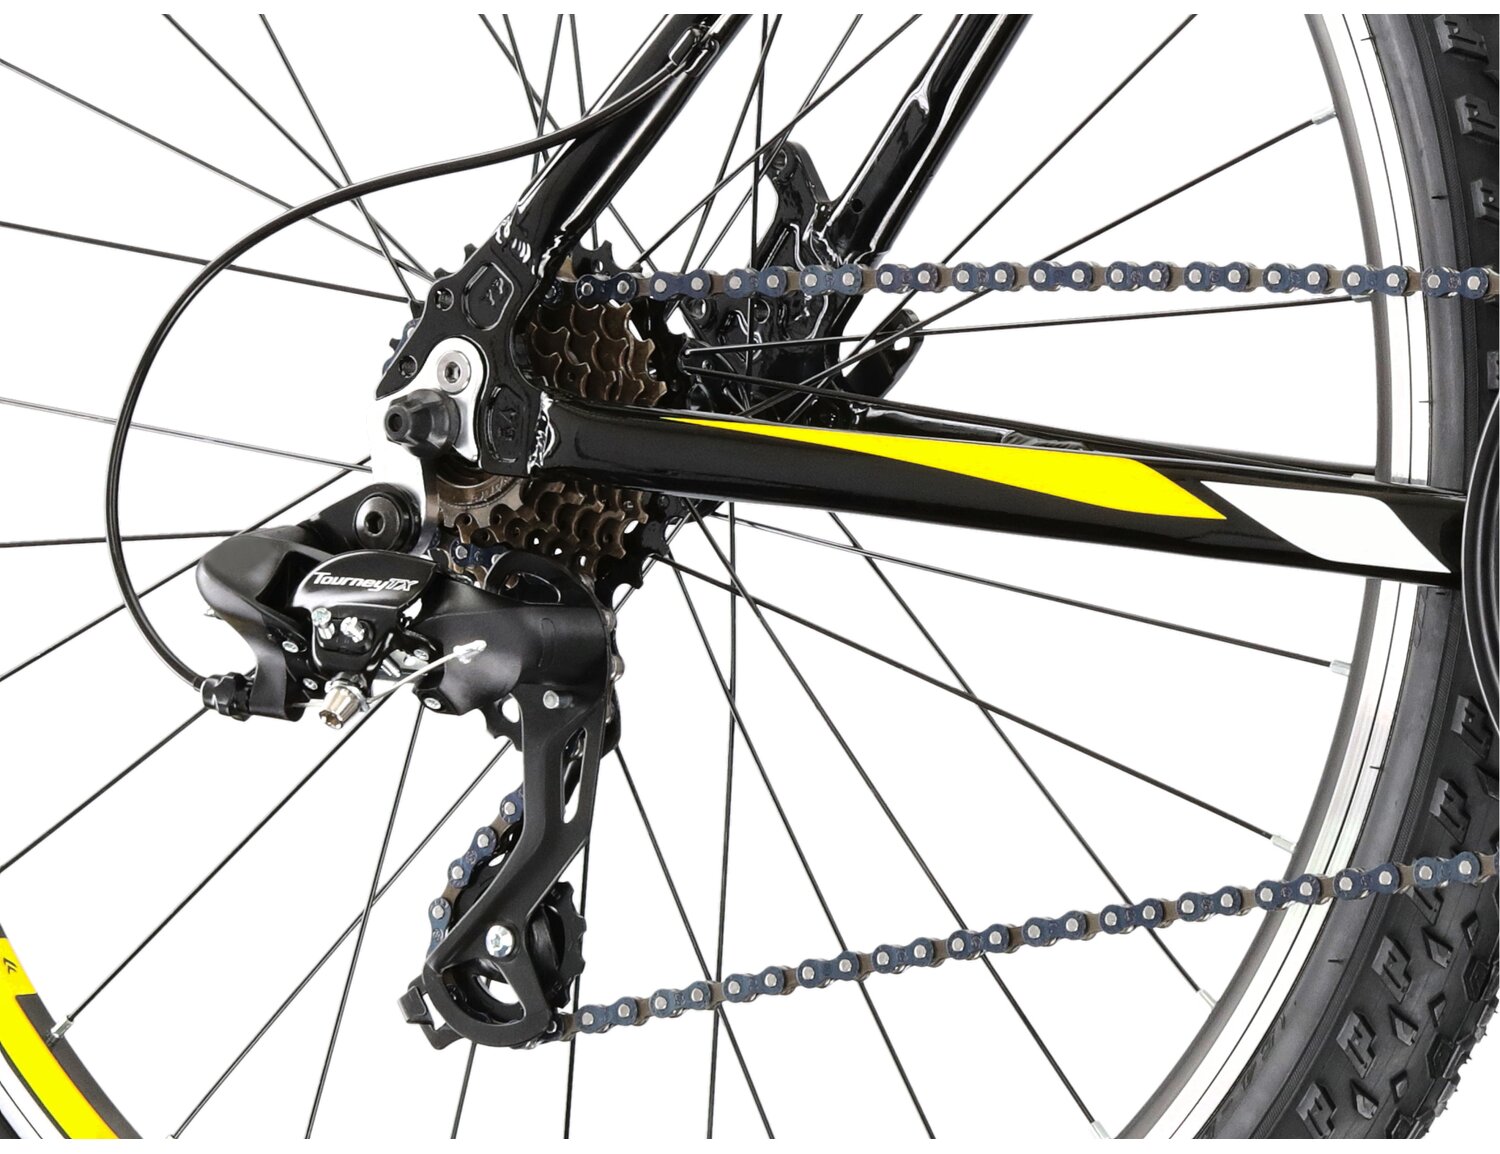  Tylna siedmiobiegowa przerzutka Shimano Tourney TX800 oraz hamulce v-brake w rowerze górskim MTB KROSS Hexagon 1.0 